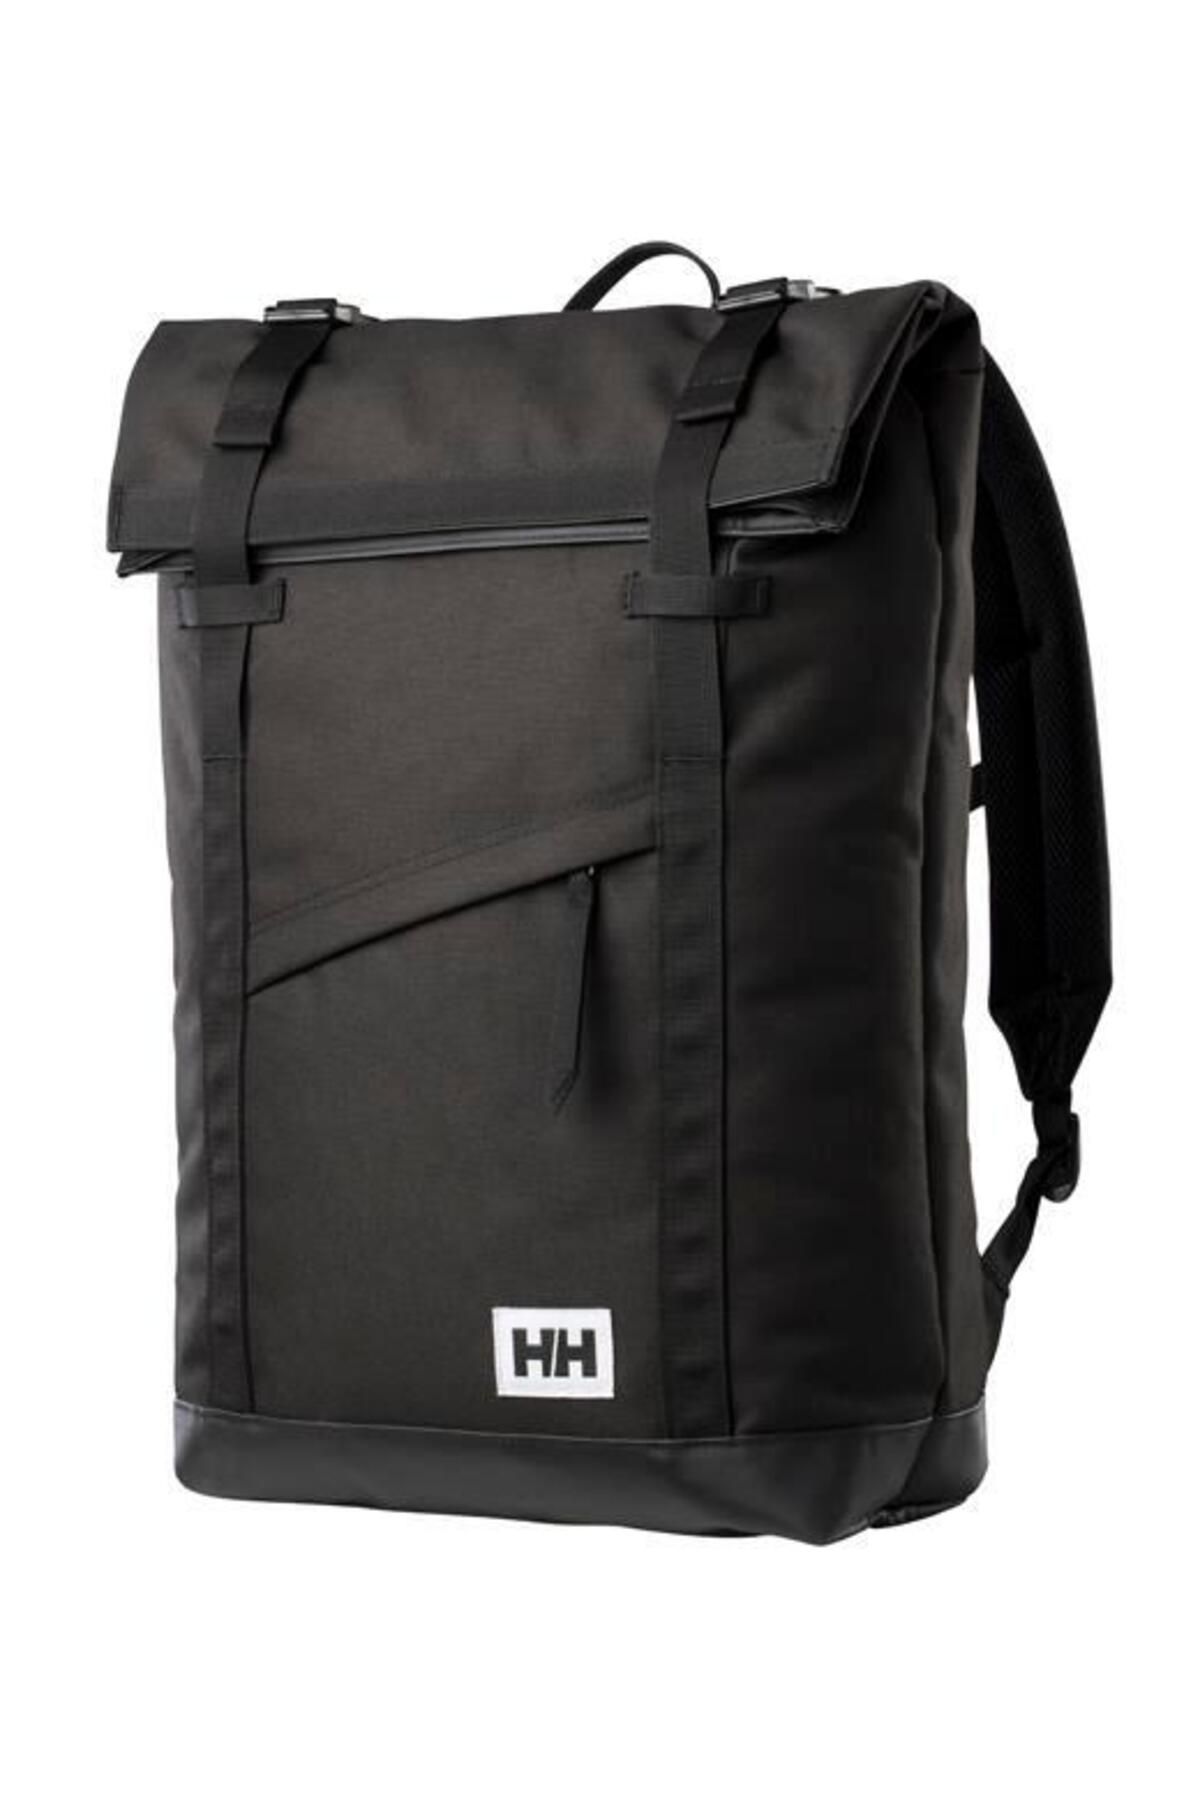 Helly Hansen Hh Stockholm Backpack